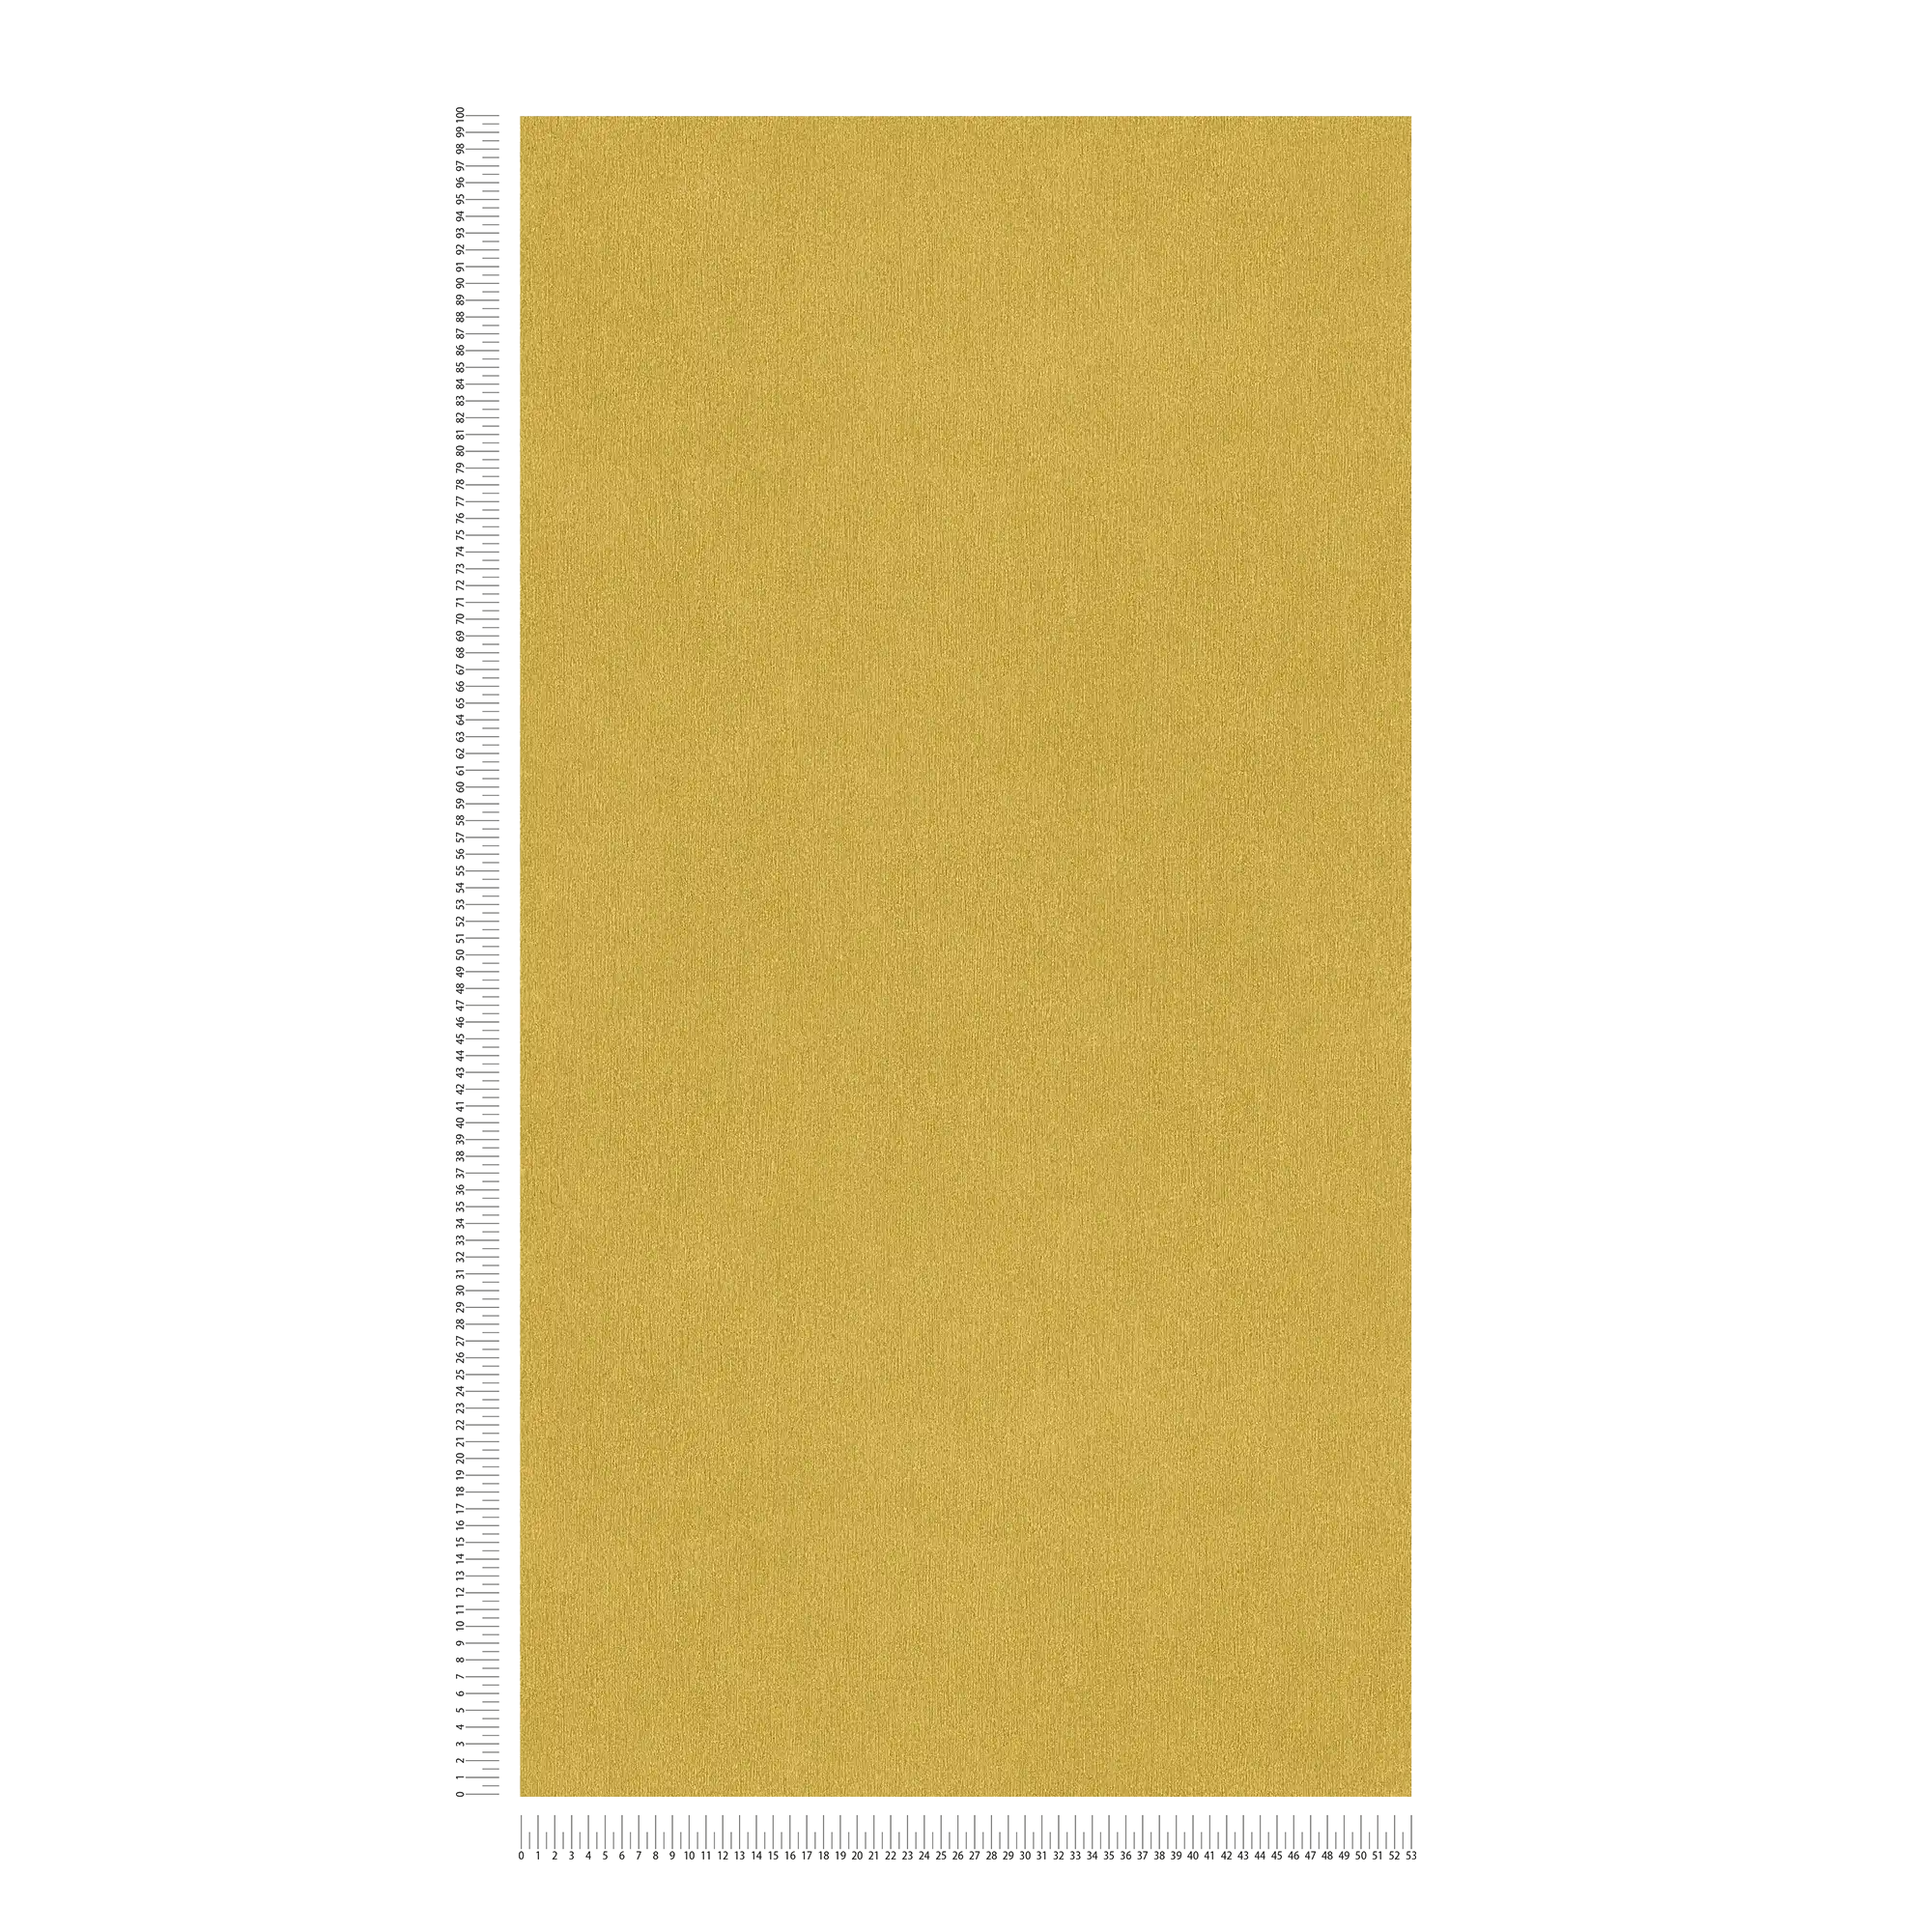             Carta da parati gialla a tinta unita con struttura cromatica, liscia e opaca come la seta
        